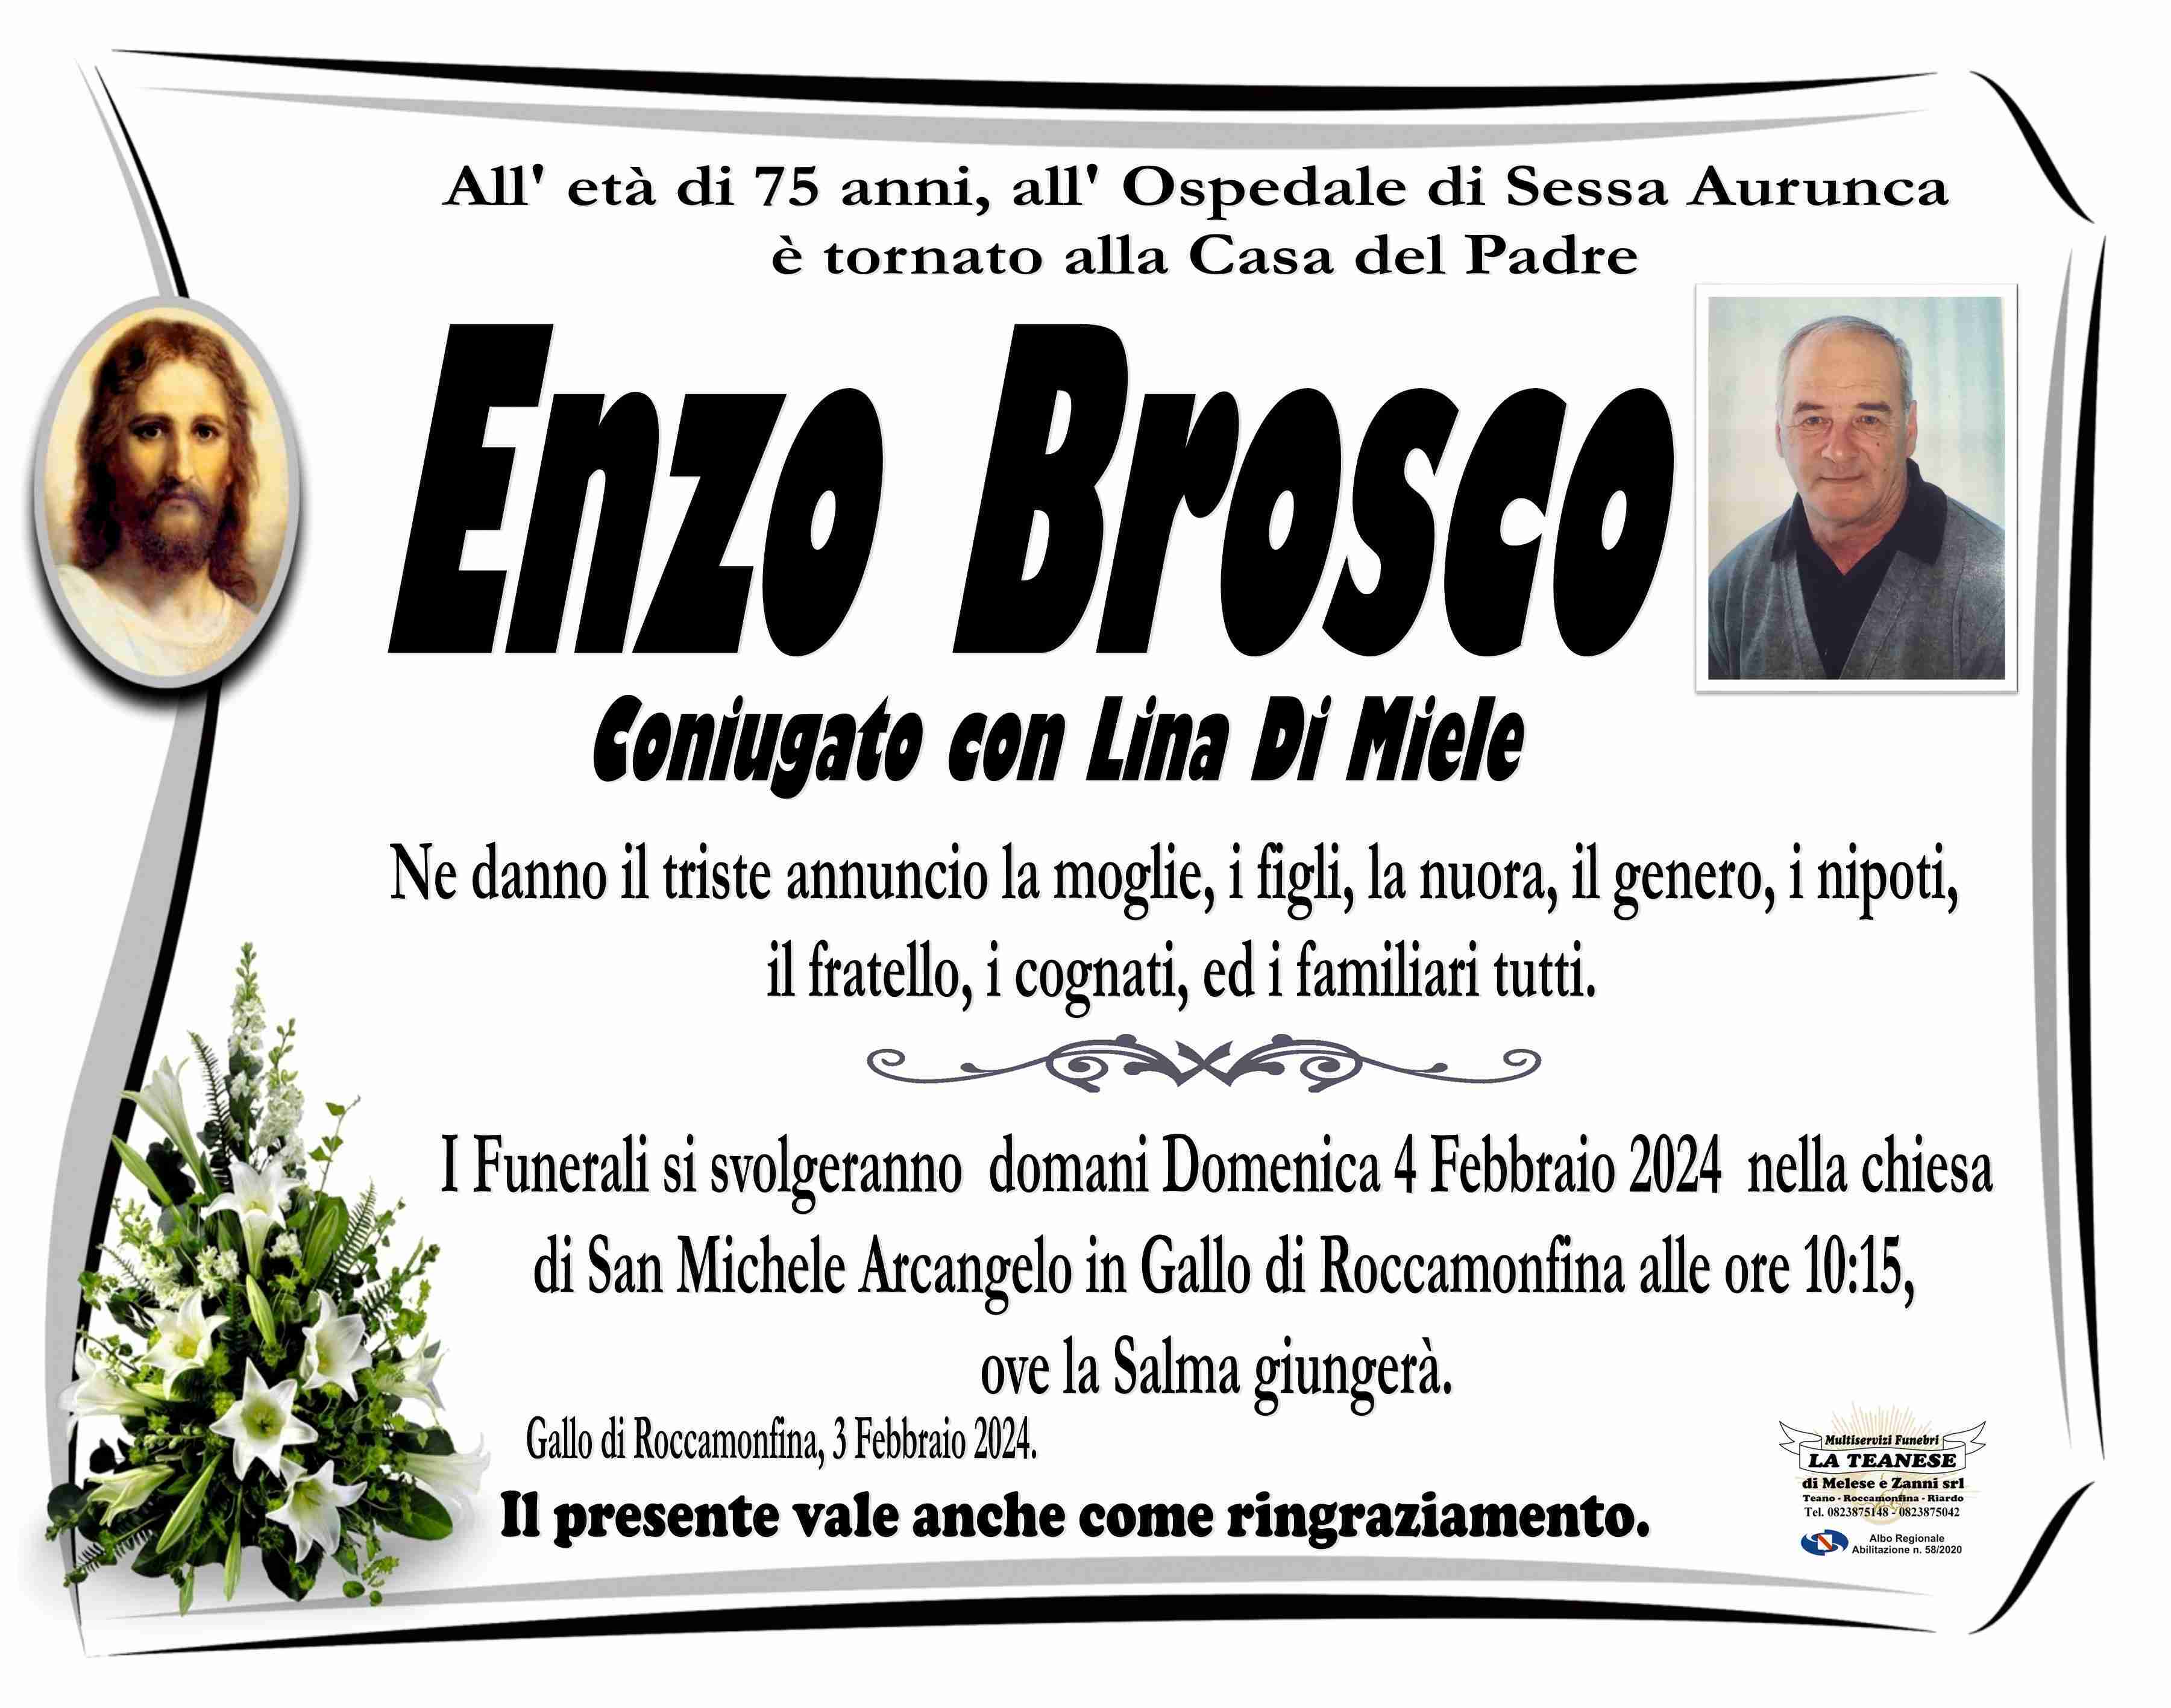 Enzo Brosco